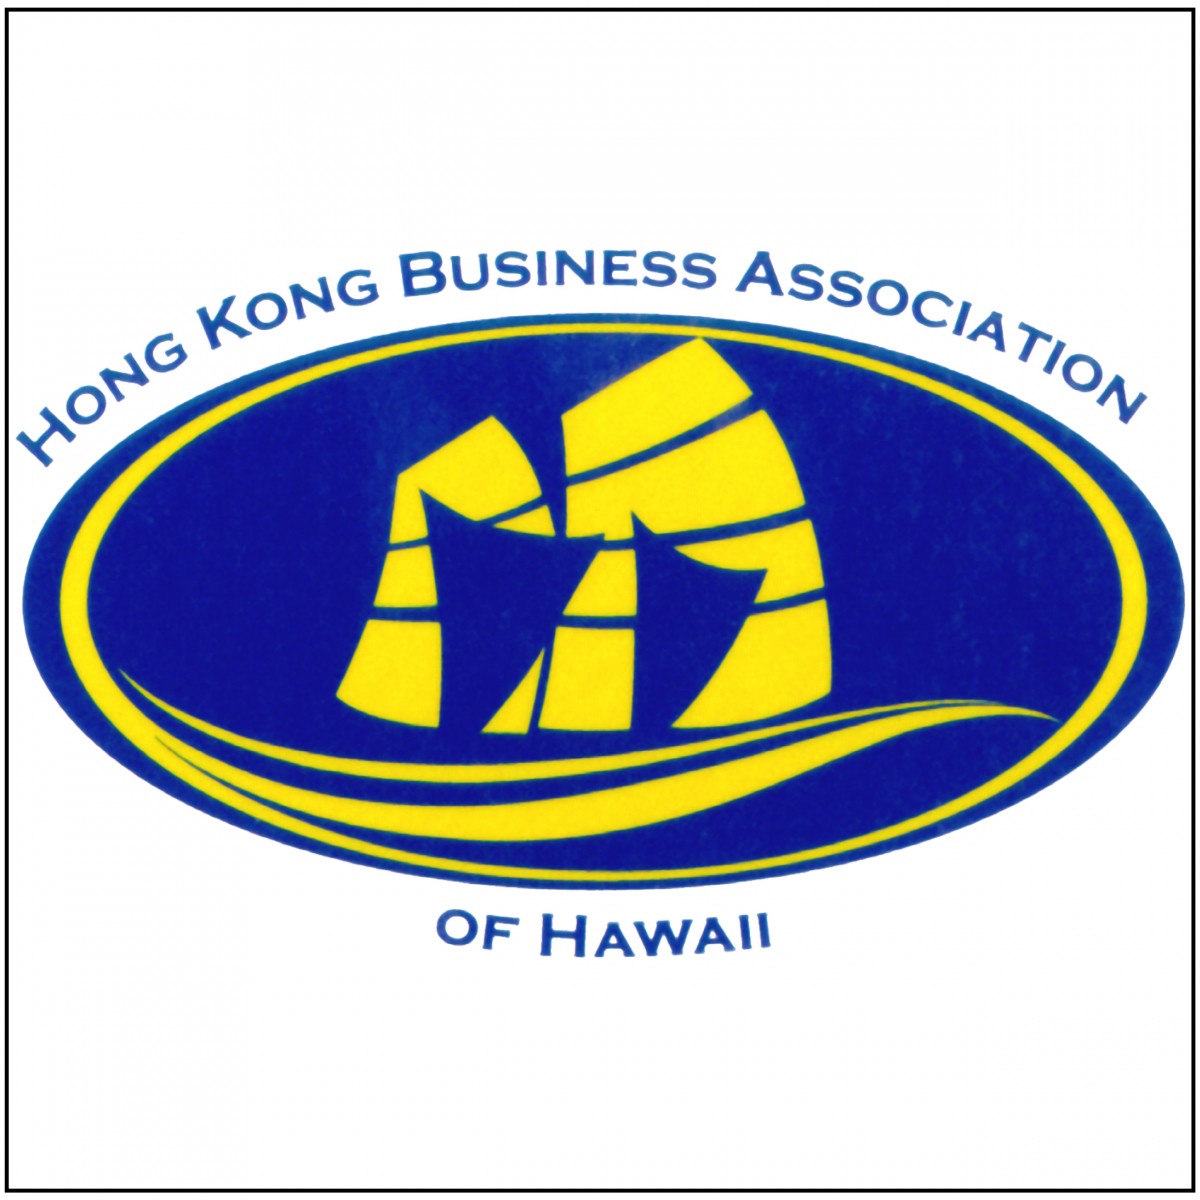 Hong Kong Business Association of Hawaii